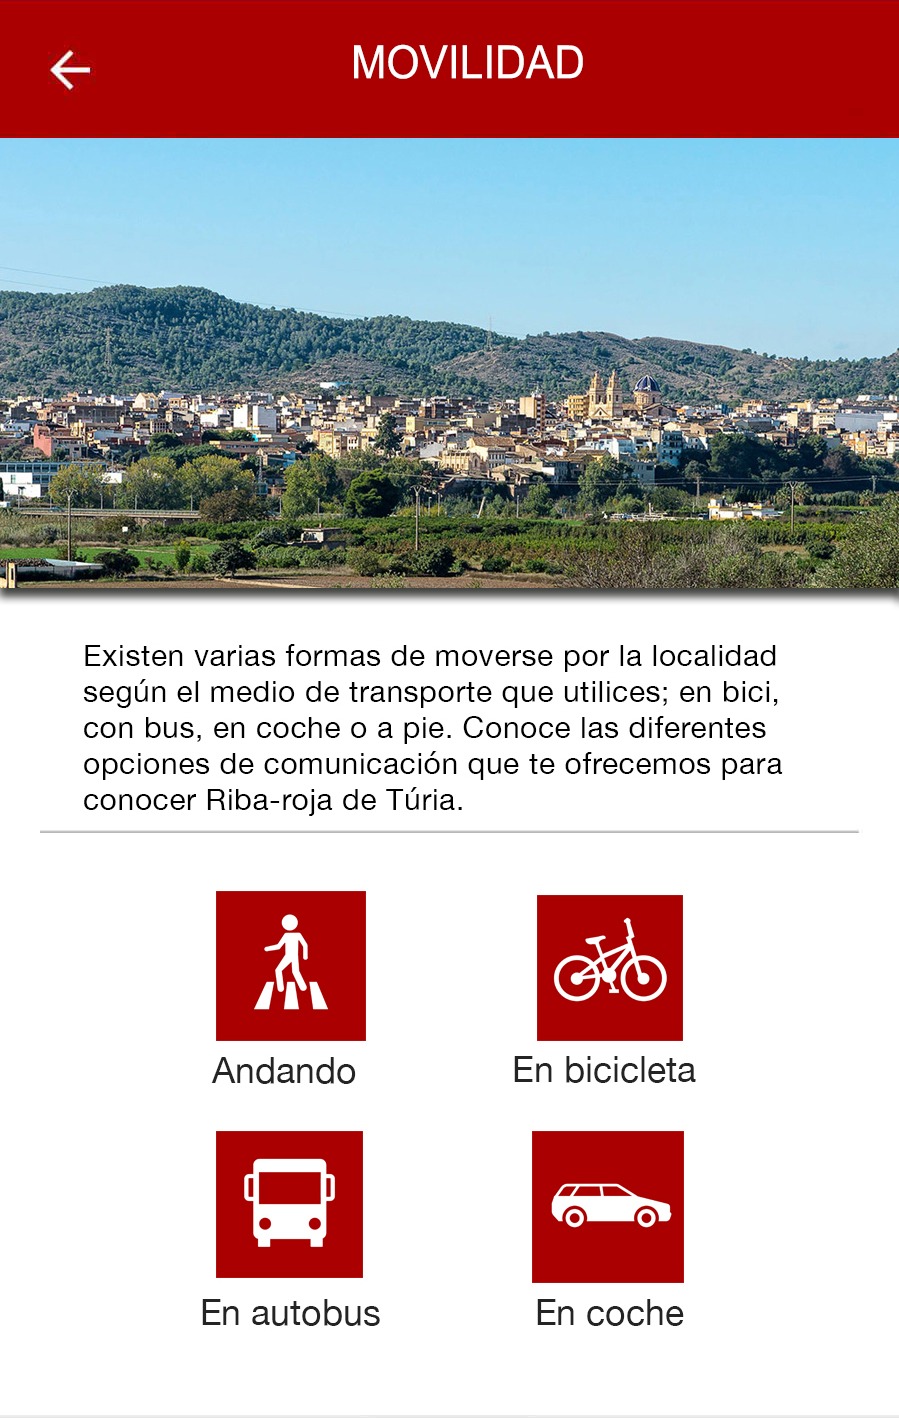 L'App Riba-roja INFO ofereix a l'usuari informaci geolocalitzada sobre les diferents formes de mobilitat en el municipi